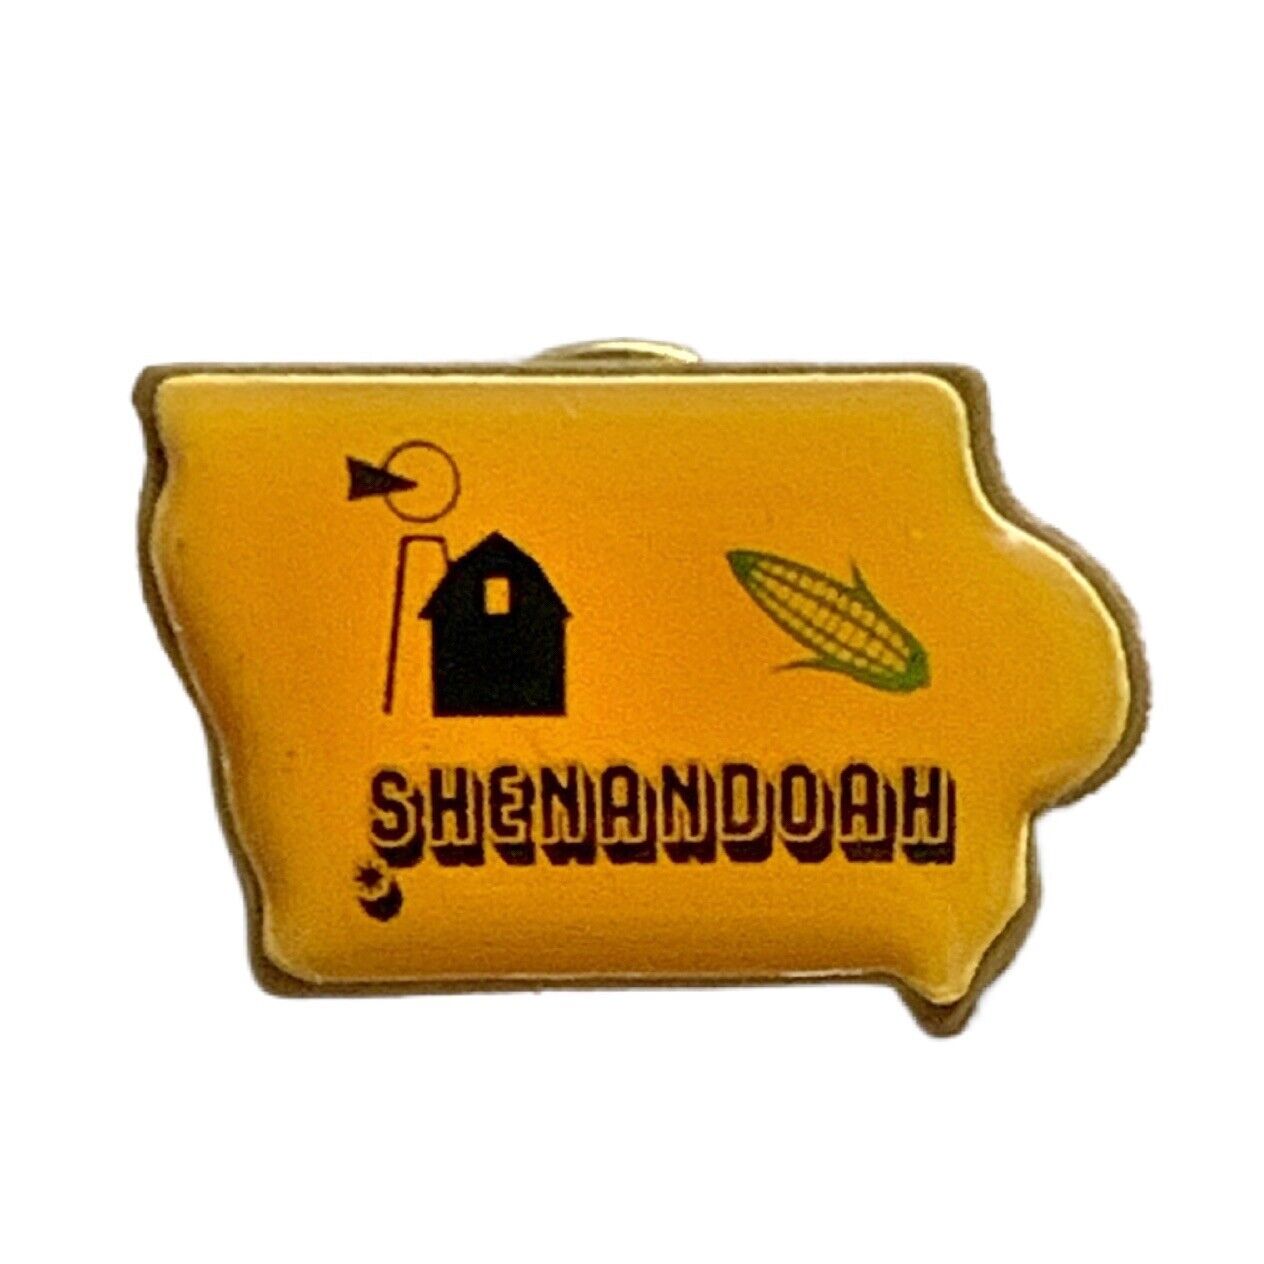 Vintage Shenandoah Iowa Travel Souvenir Pin